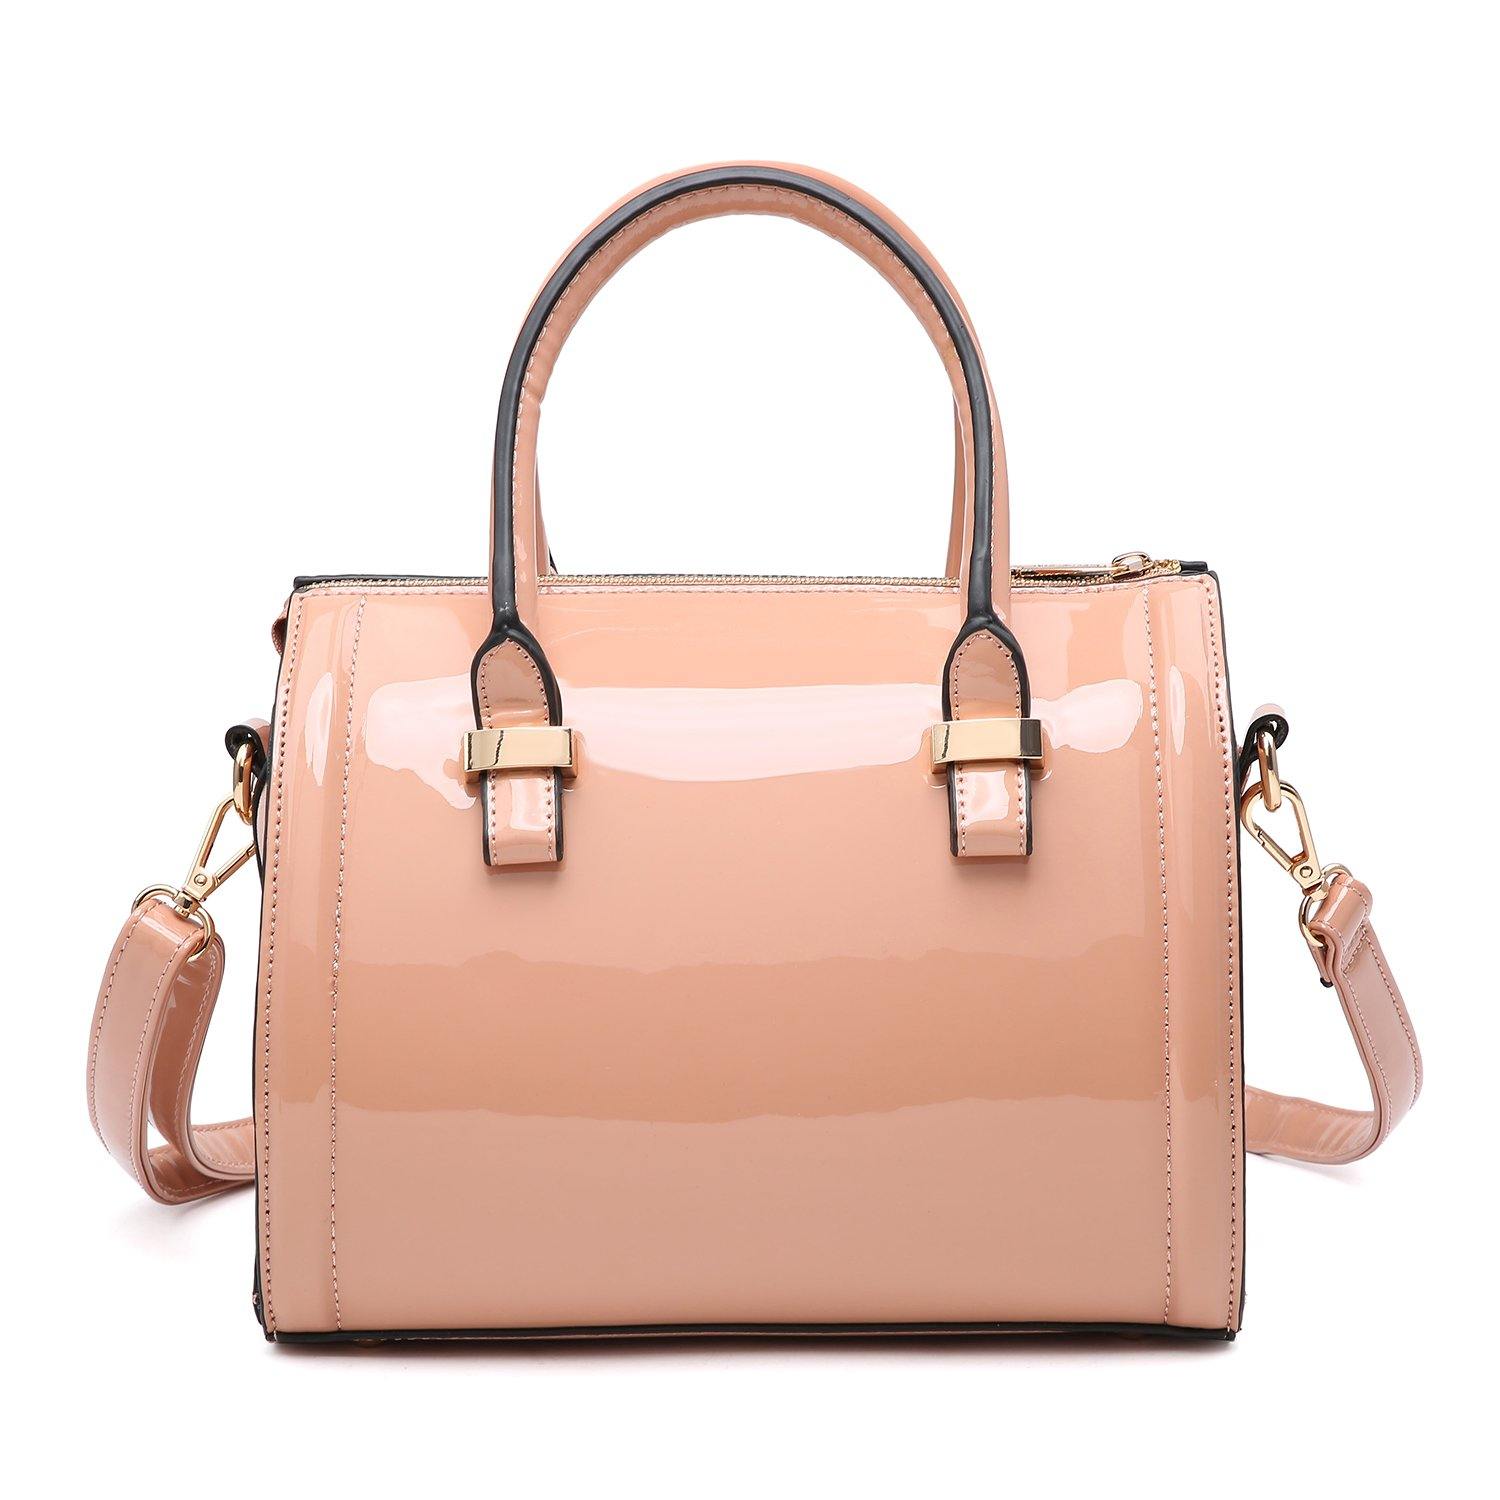  Women's Top-Handle Handbags - Women's Top-Handle